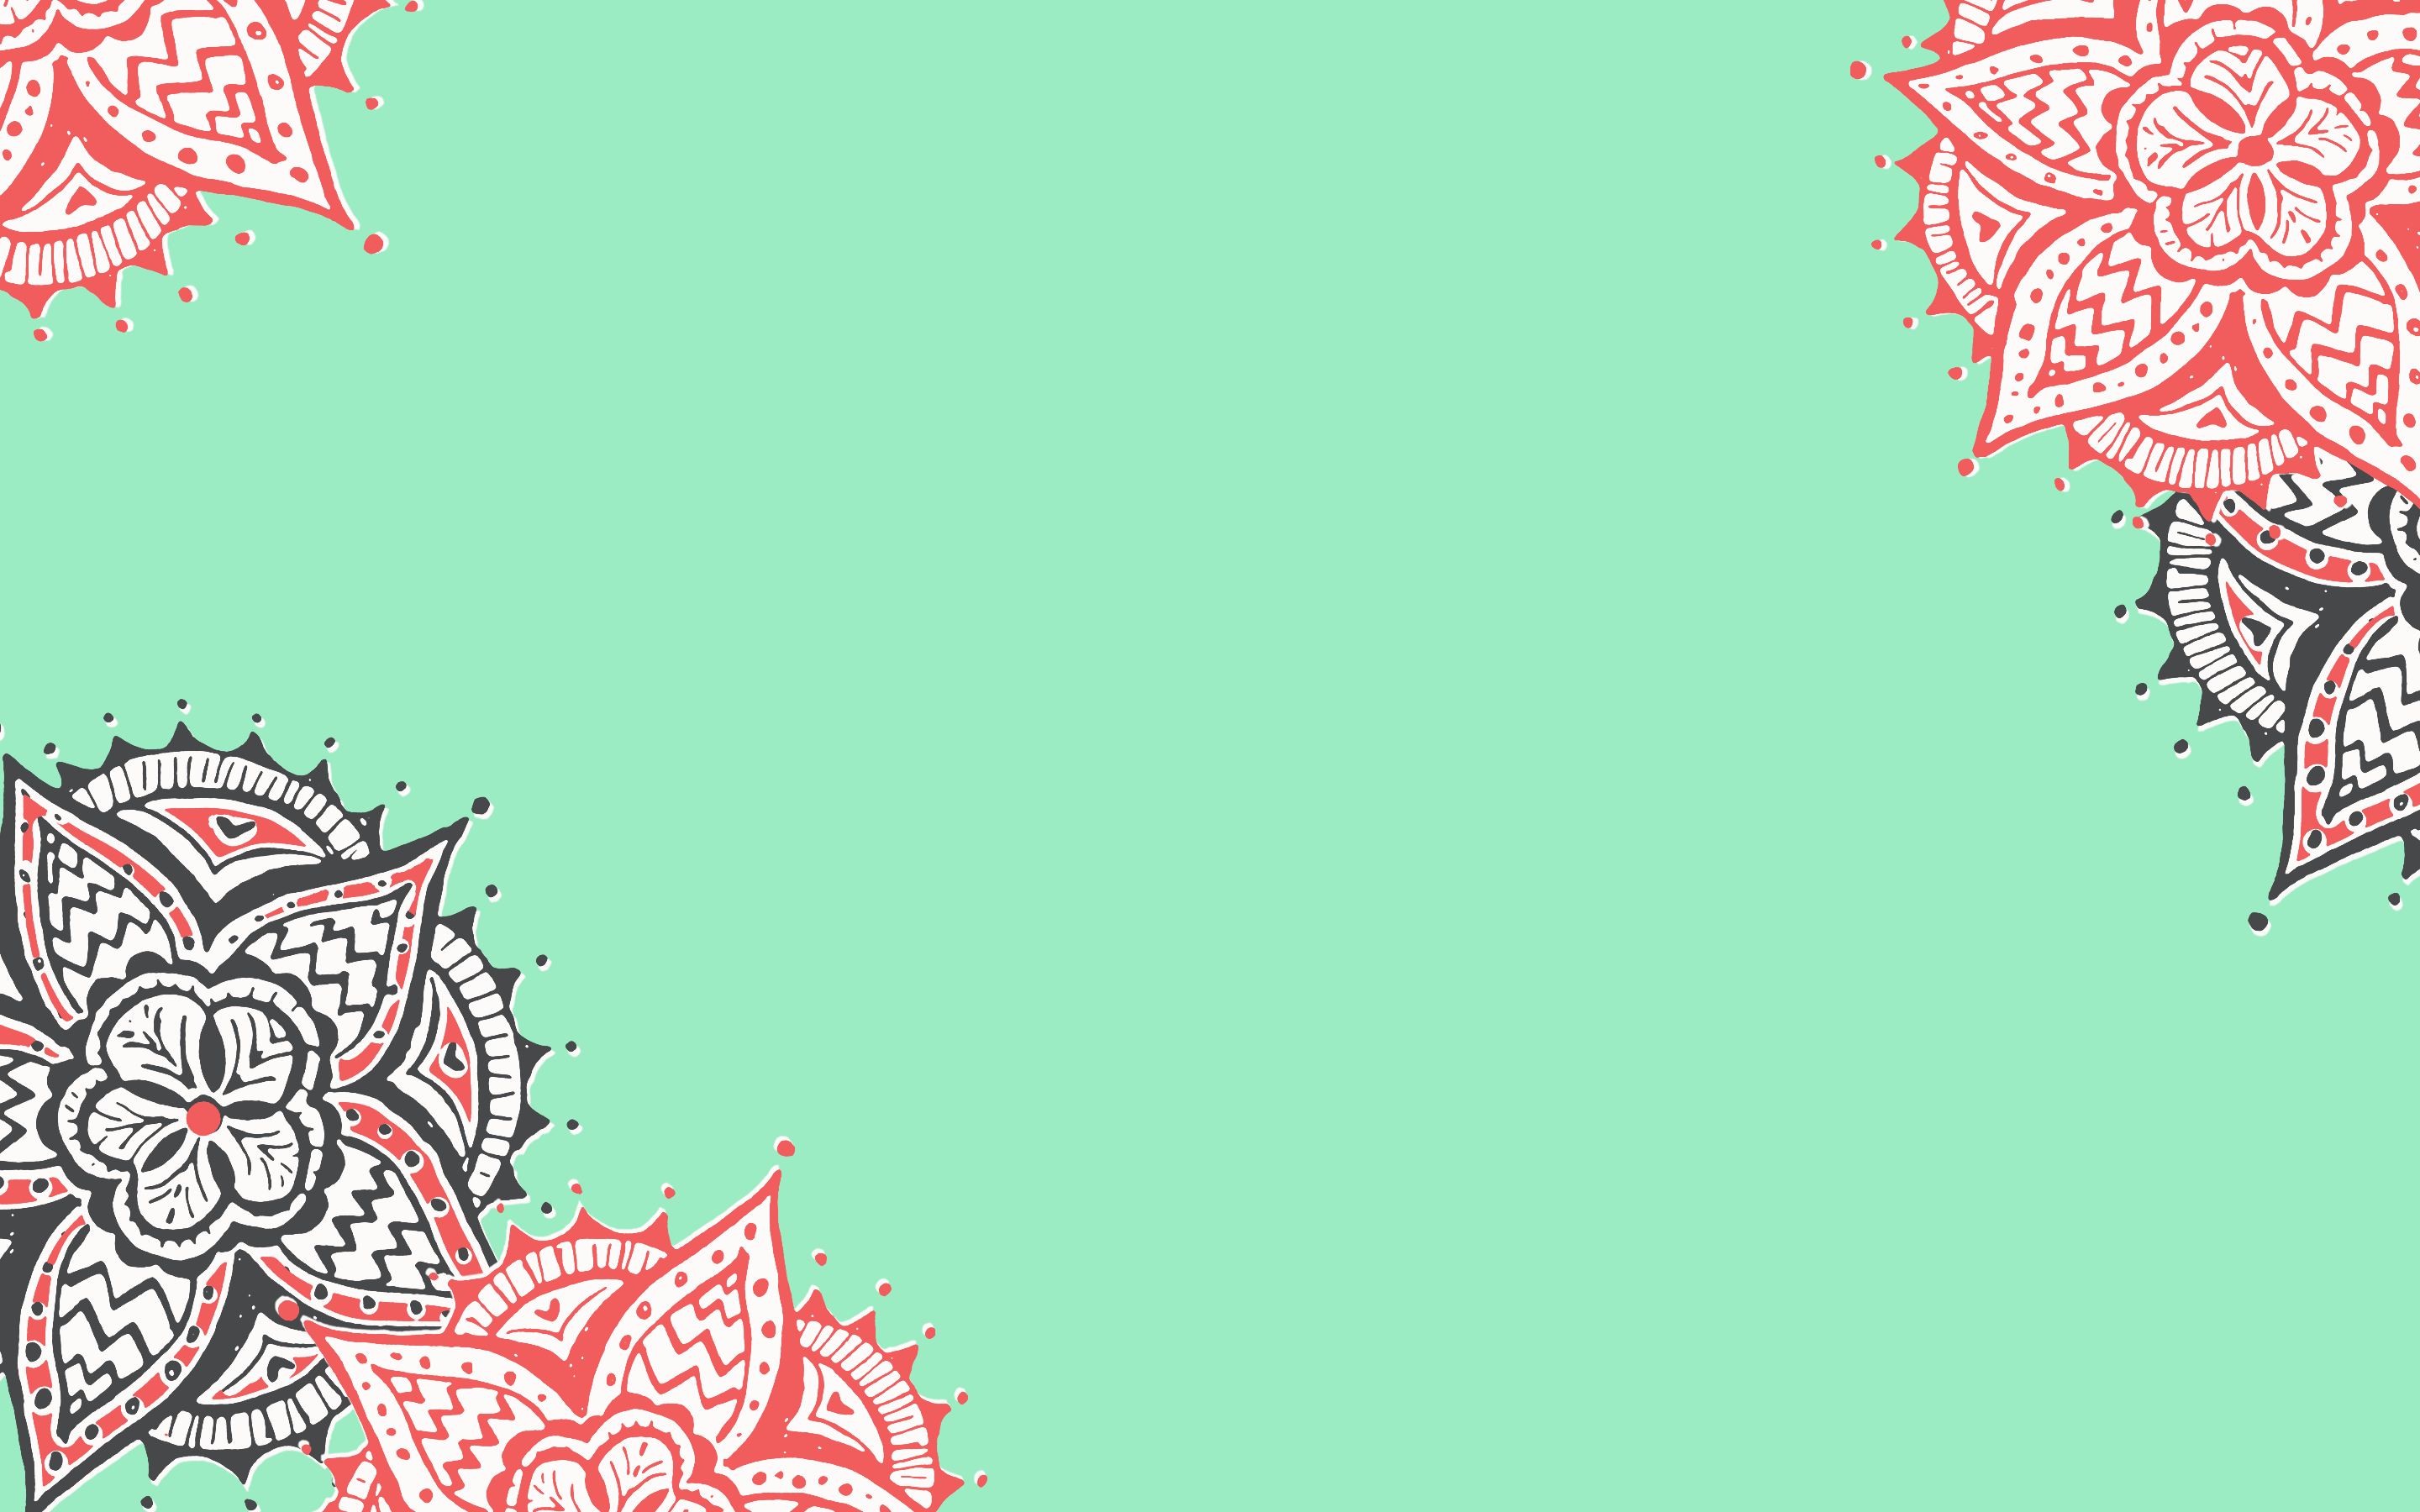 mint green wallpaper,text,ornament,pattern,illustration